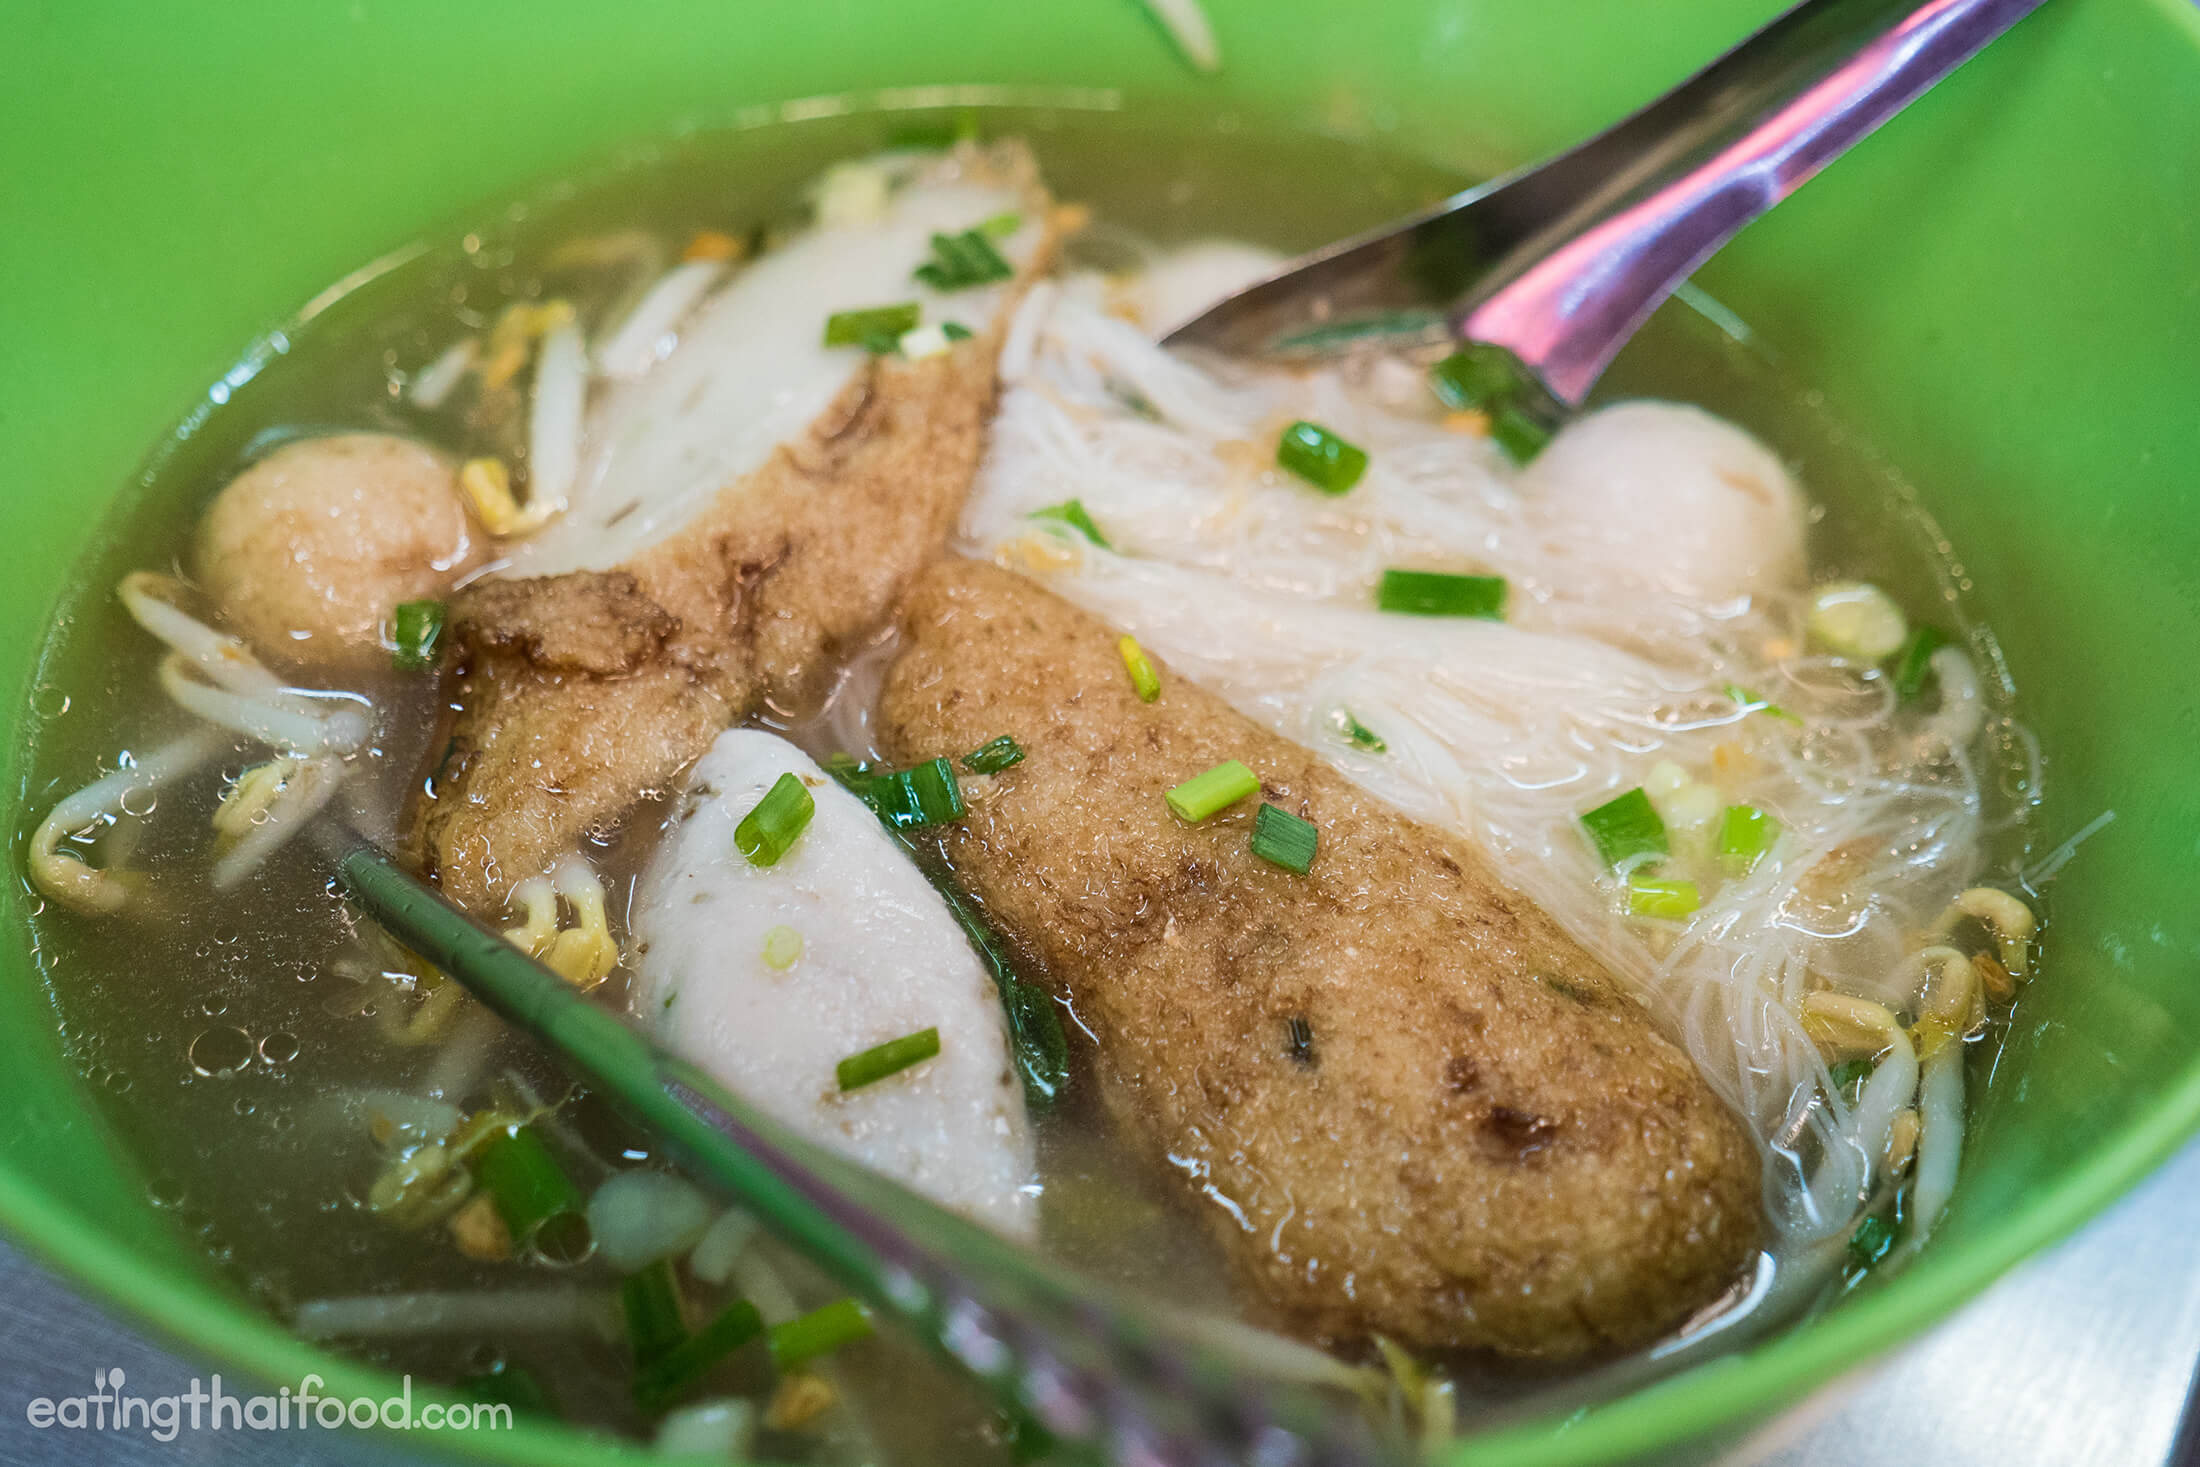 Thai Fishball Noodles at Khlong Toey Market